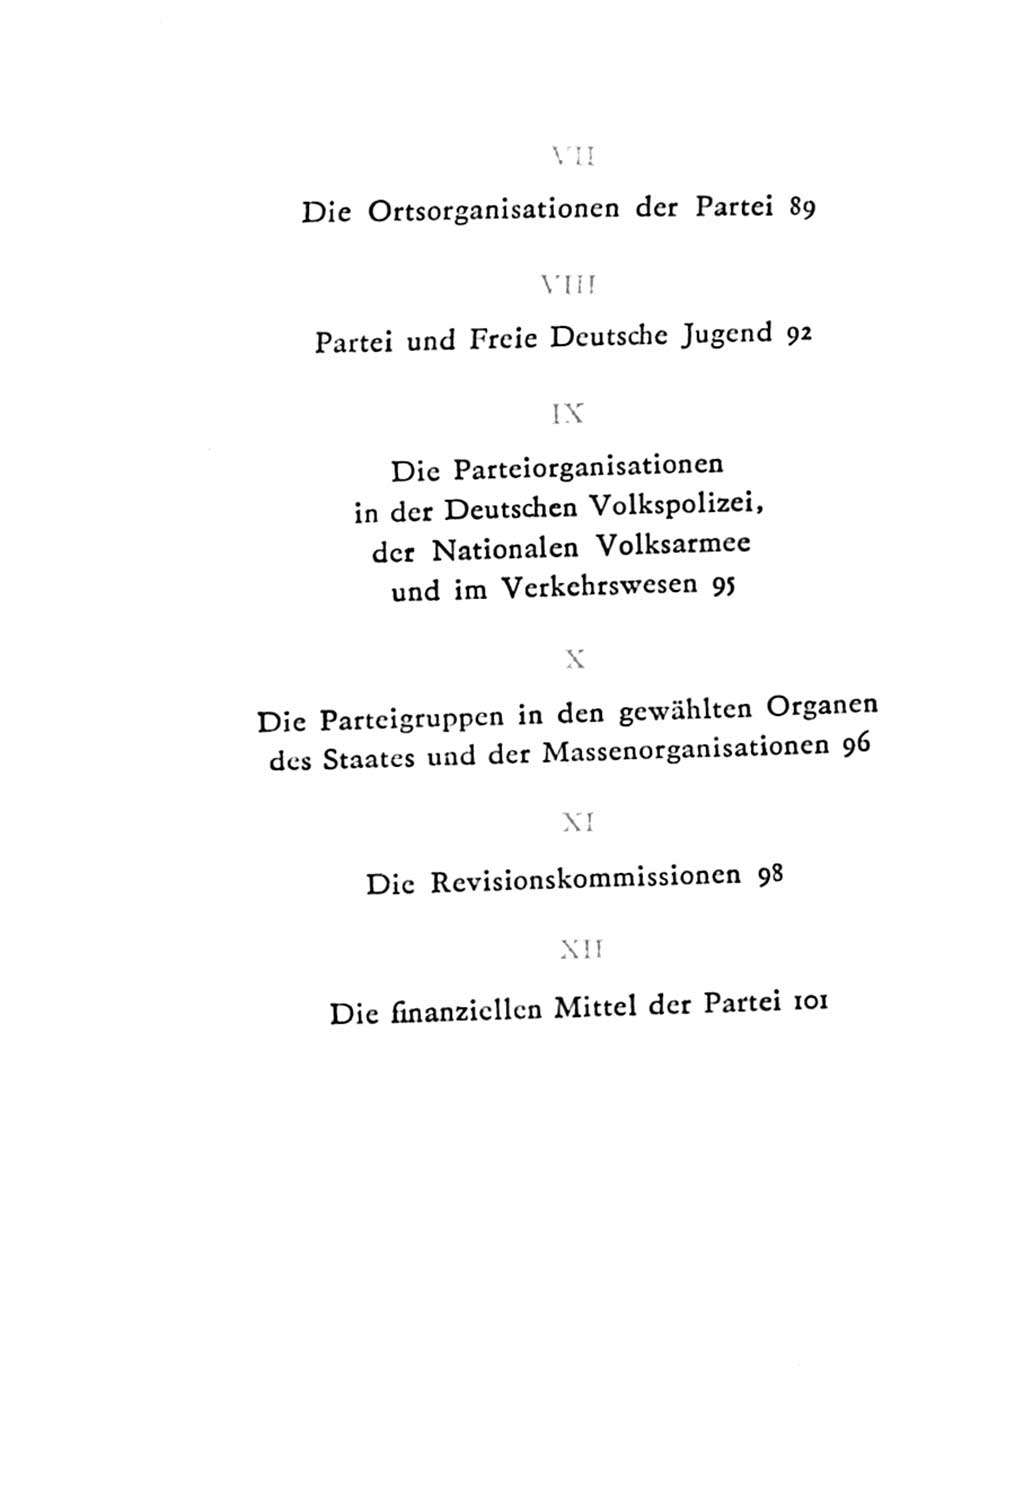 Statut der Sozialistischen Einheitspartei Deutschlands (SED) 1967, Seite 104 (St. SED DDR 1967, S. 104)